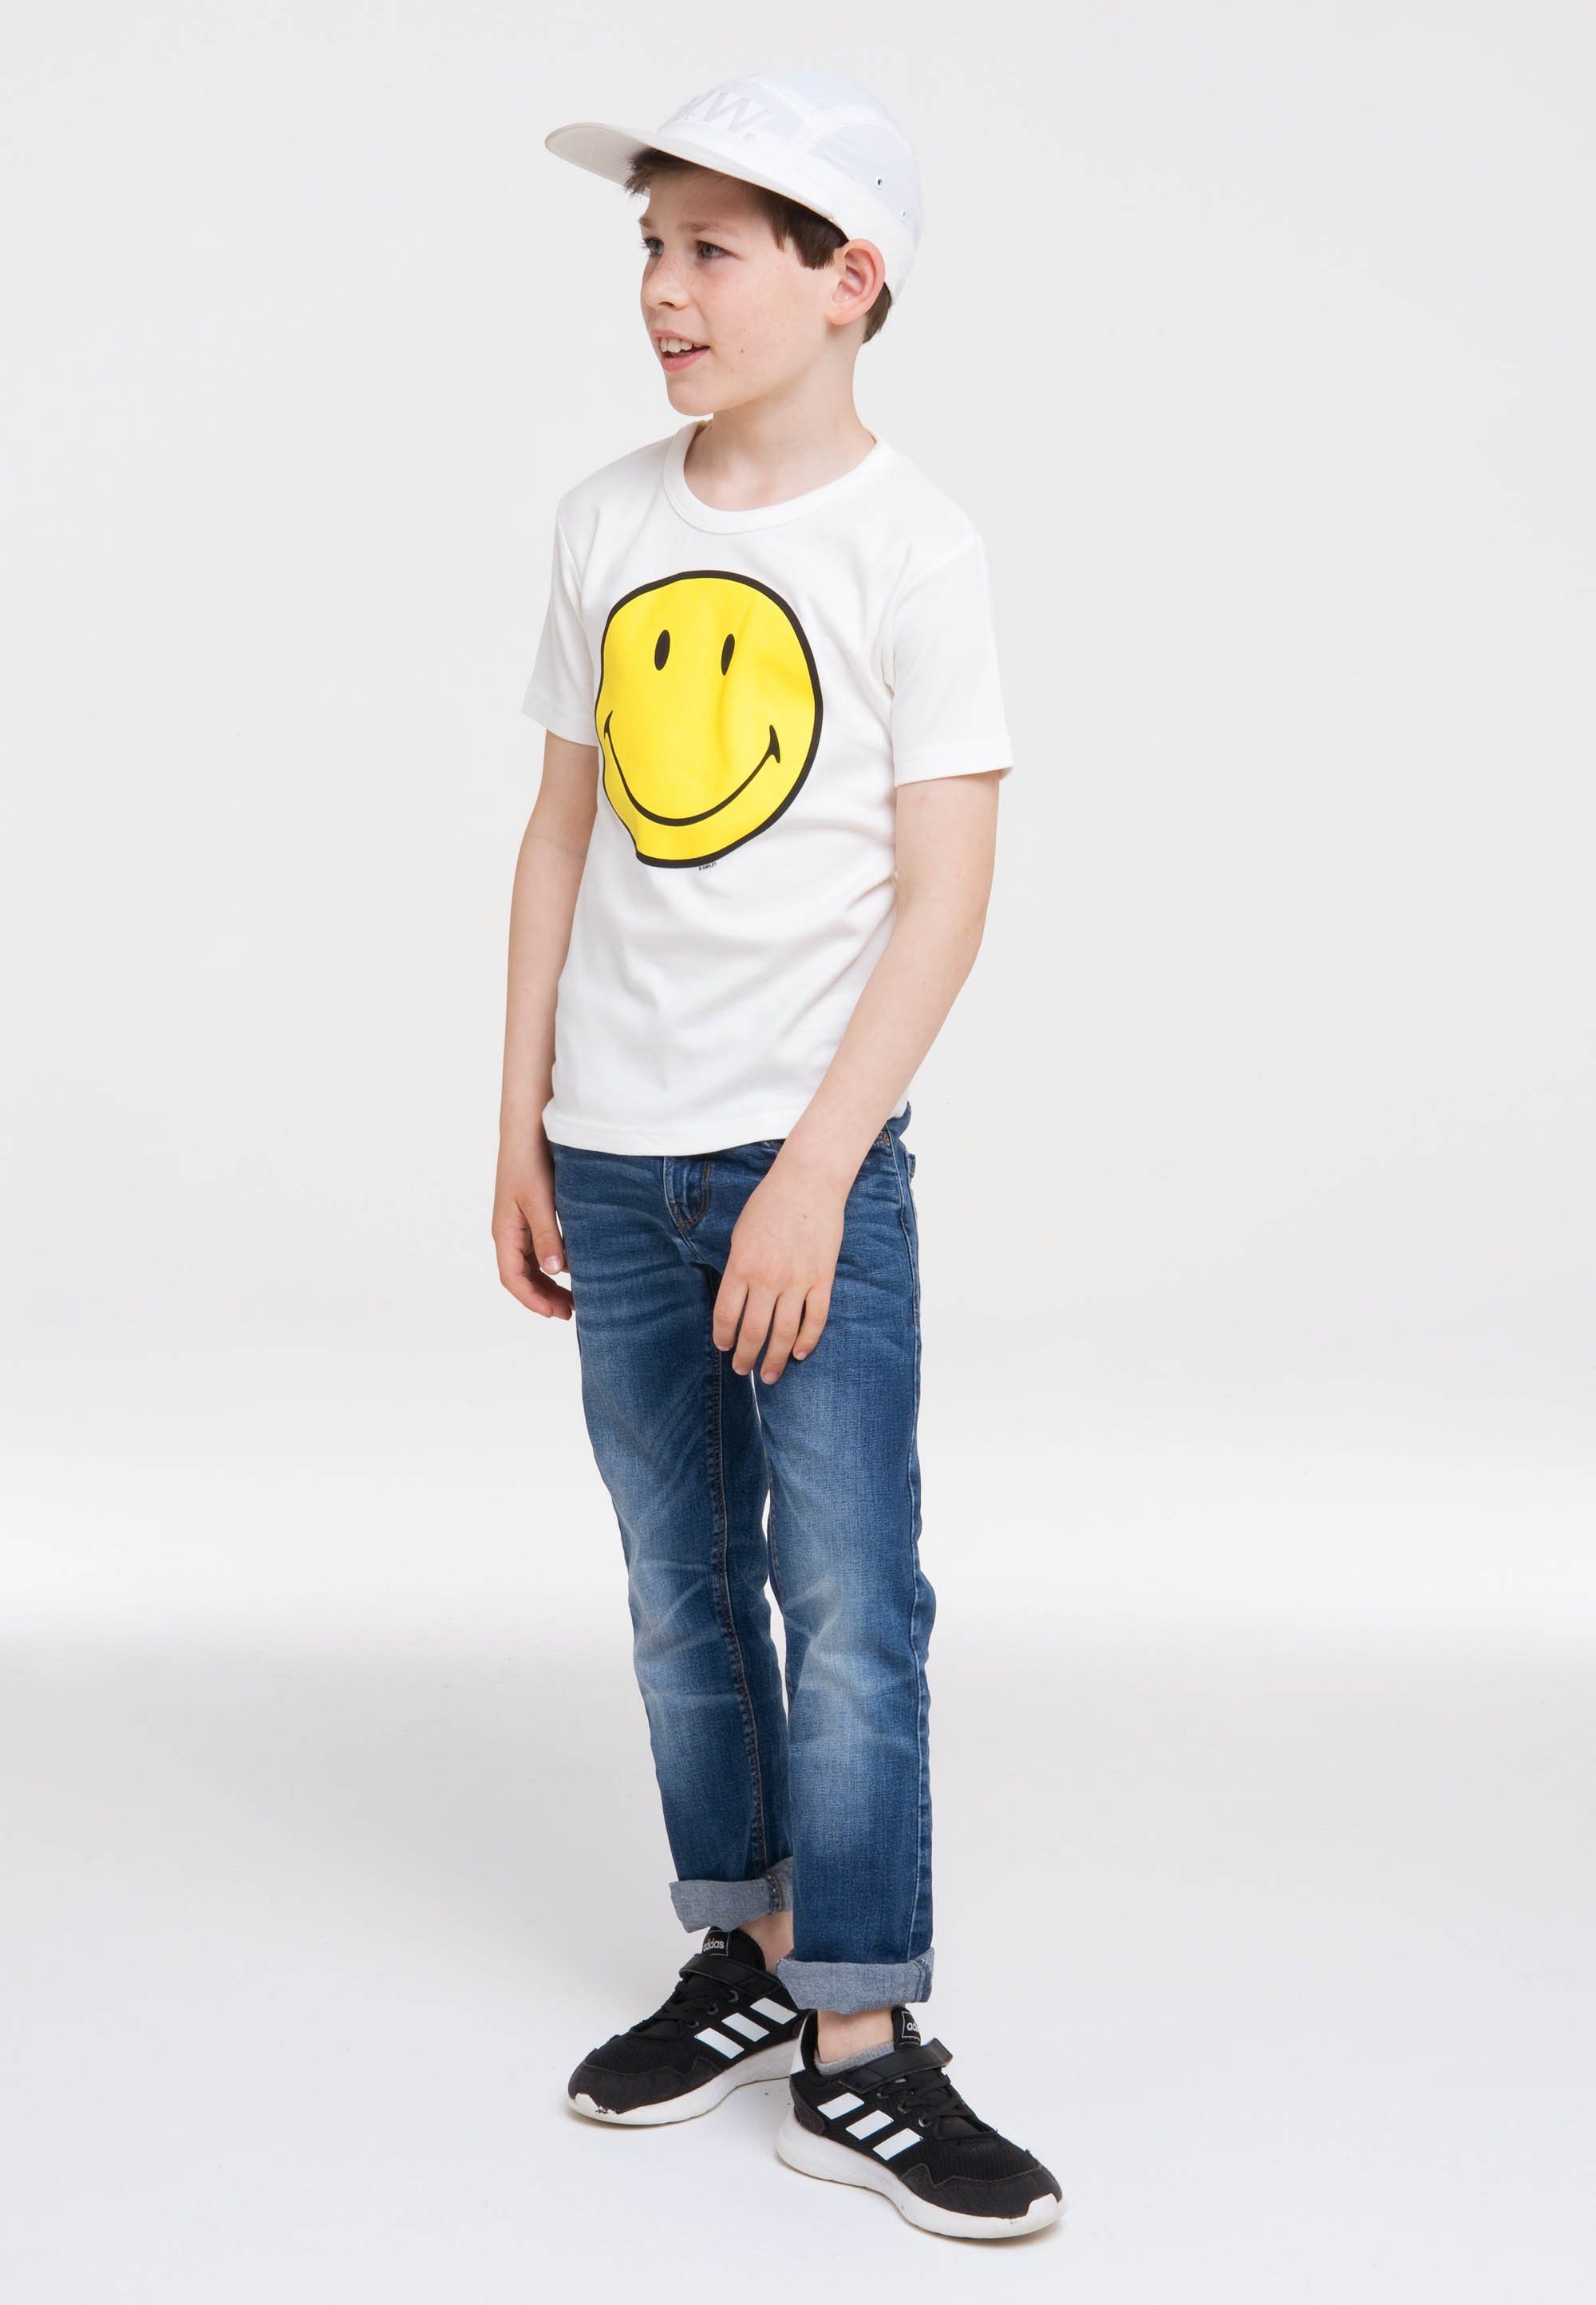 von Smiley-Design, Logoshirt T-Shirt T-Shirt für Face tollem Smiley in Kinder Smiley LOGOSHIRT